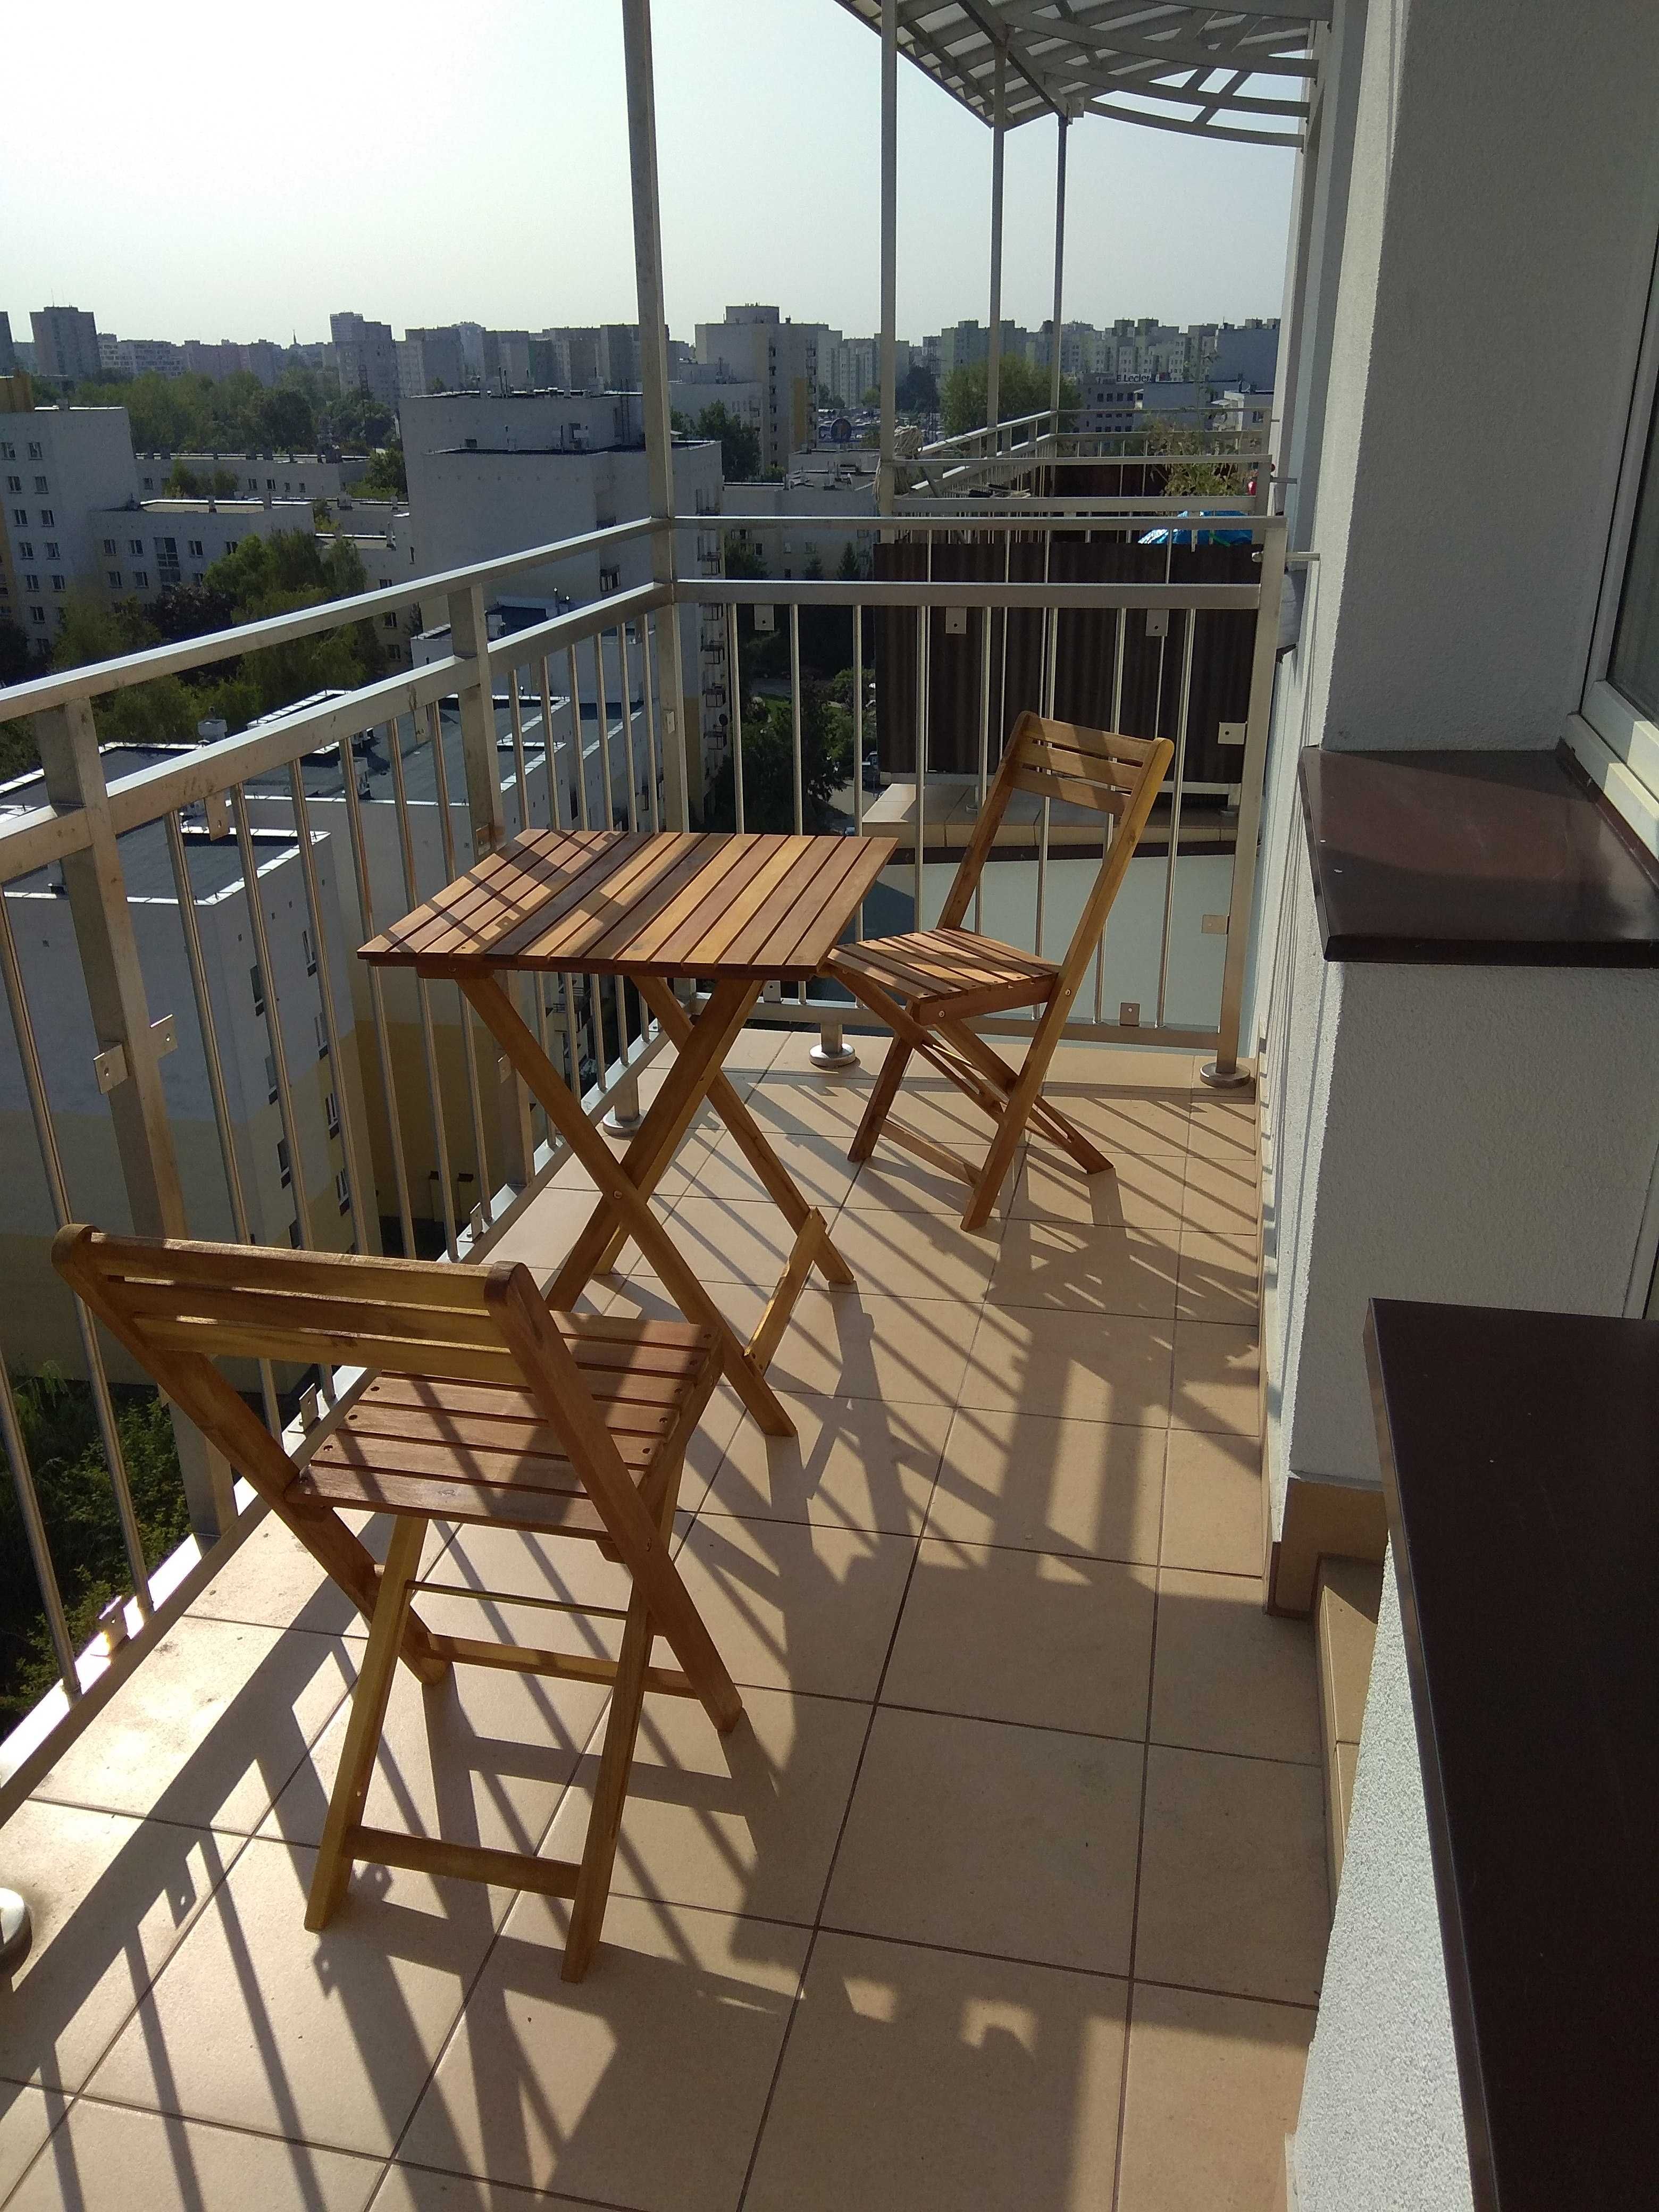 Pokój z balkonem dla 1 lub 2 osób, koło metra Stokłosy, klimatyzacja.